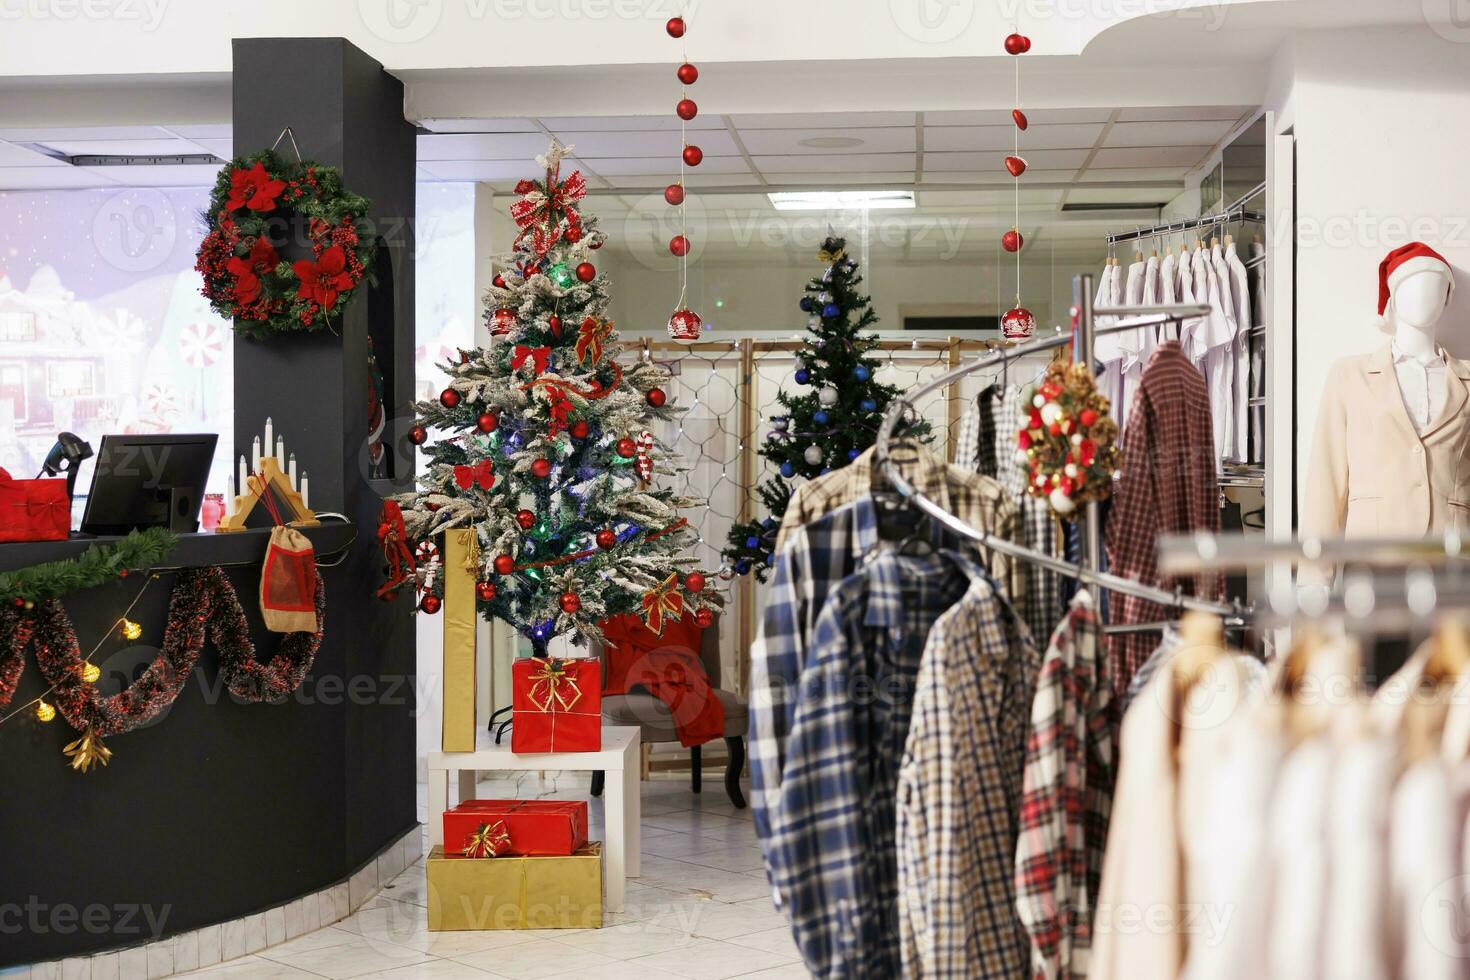 tömma festlig Kläder Lagra under jul säsong, vackert dekorerad xmas träd och ornament i mode Centrum boutique. detaljhandeln affär inuti köpcenter väntar för klienter under Semester säsong. foto